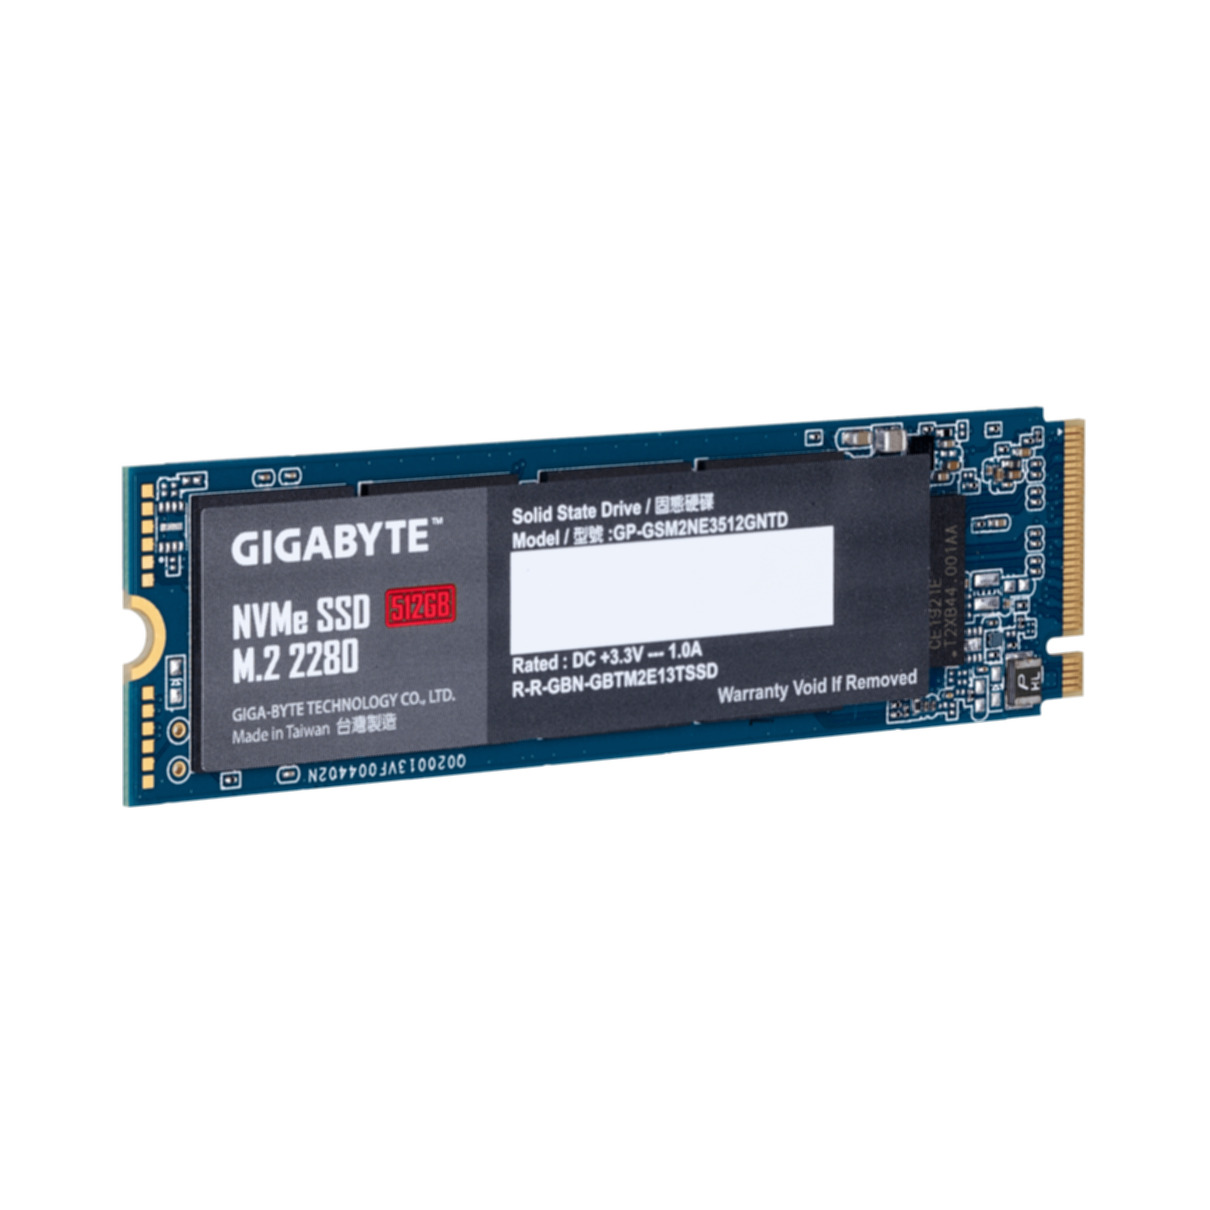 GP-GSM2NE3512GNTD, GB, SSD, 512 intern GIGABYTE